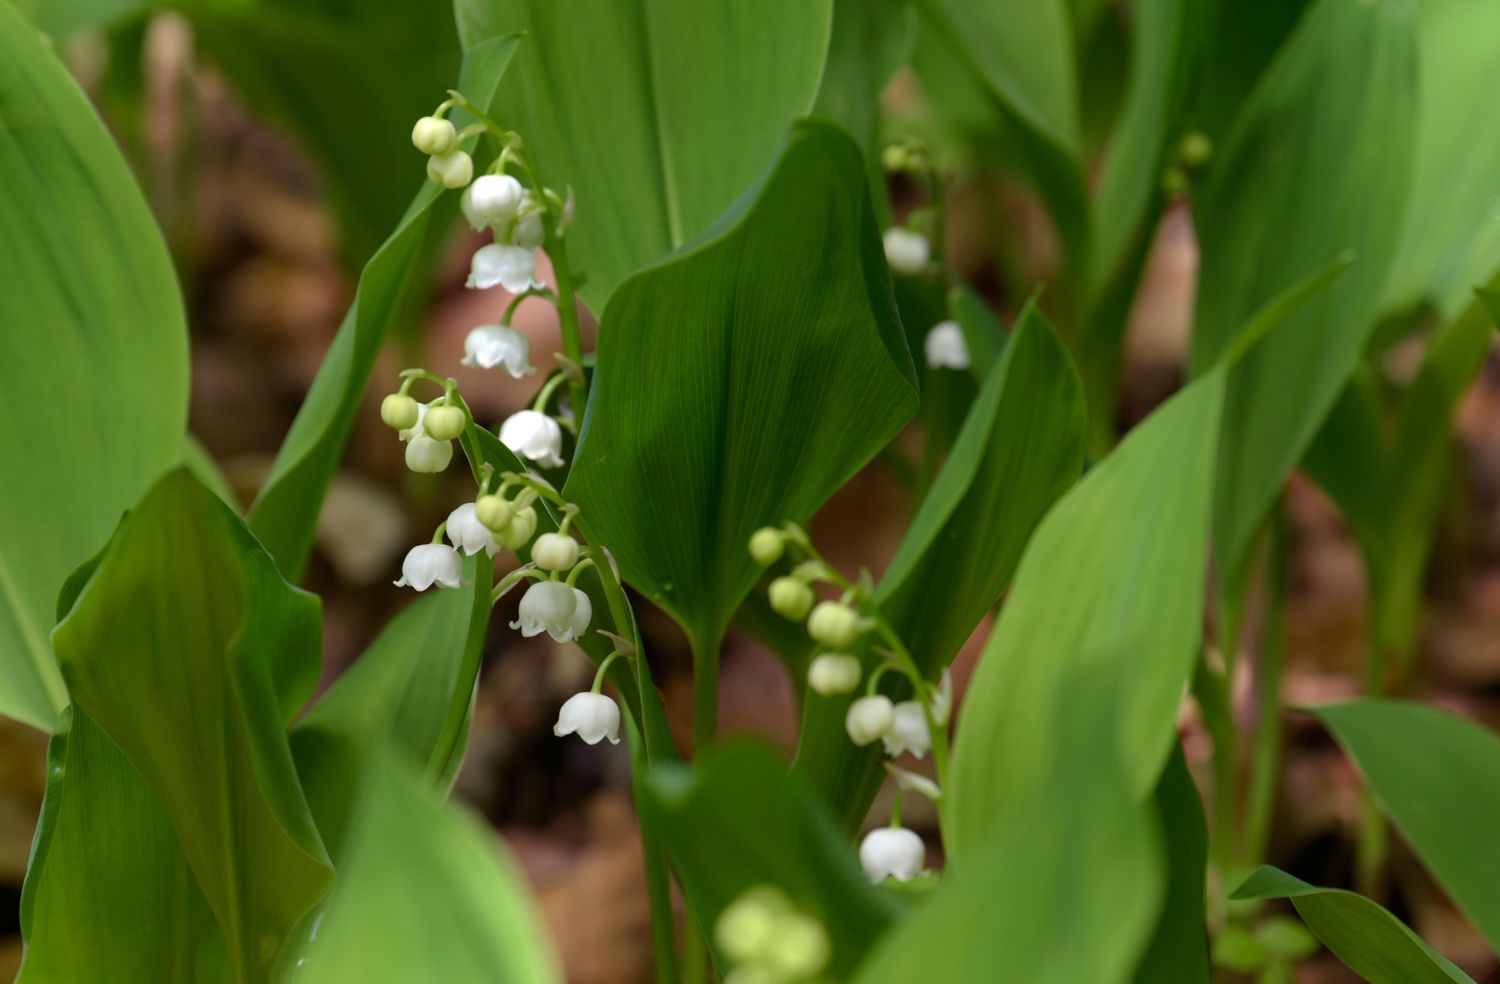 Maiglöckchenpflanze mit winzigen weißen glockenförmigen Blüten, die von großen Blättern umgeben sind